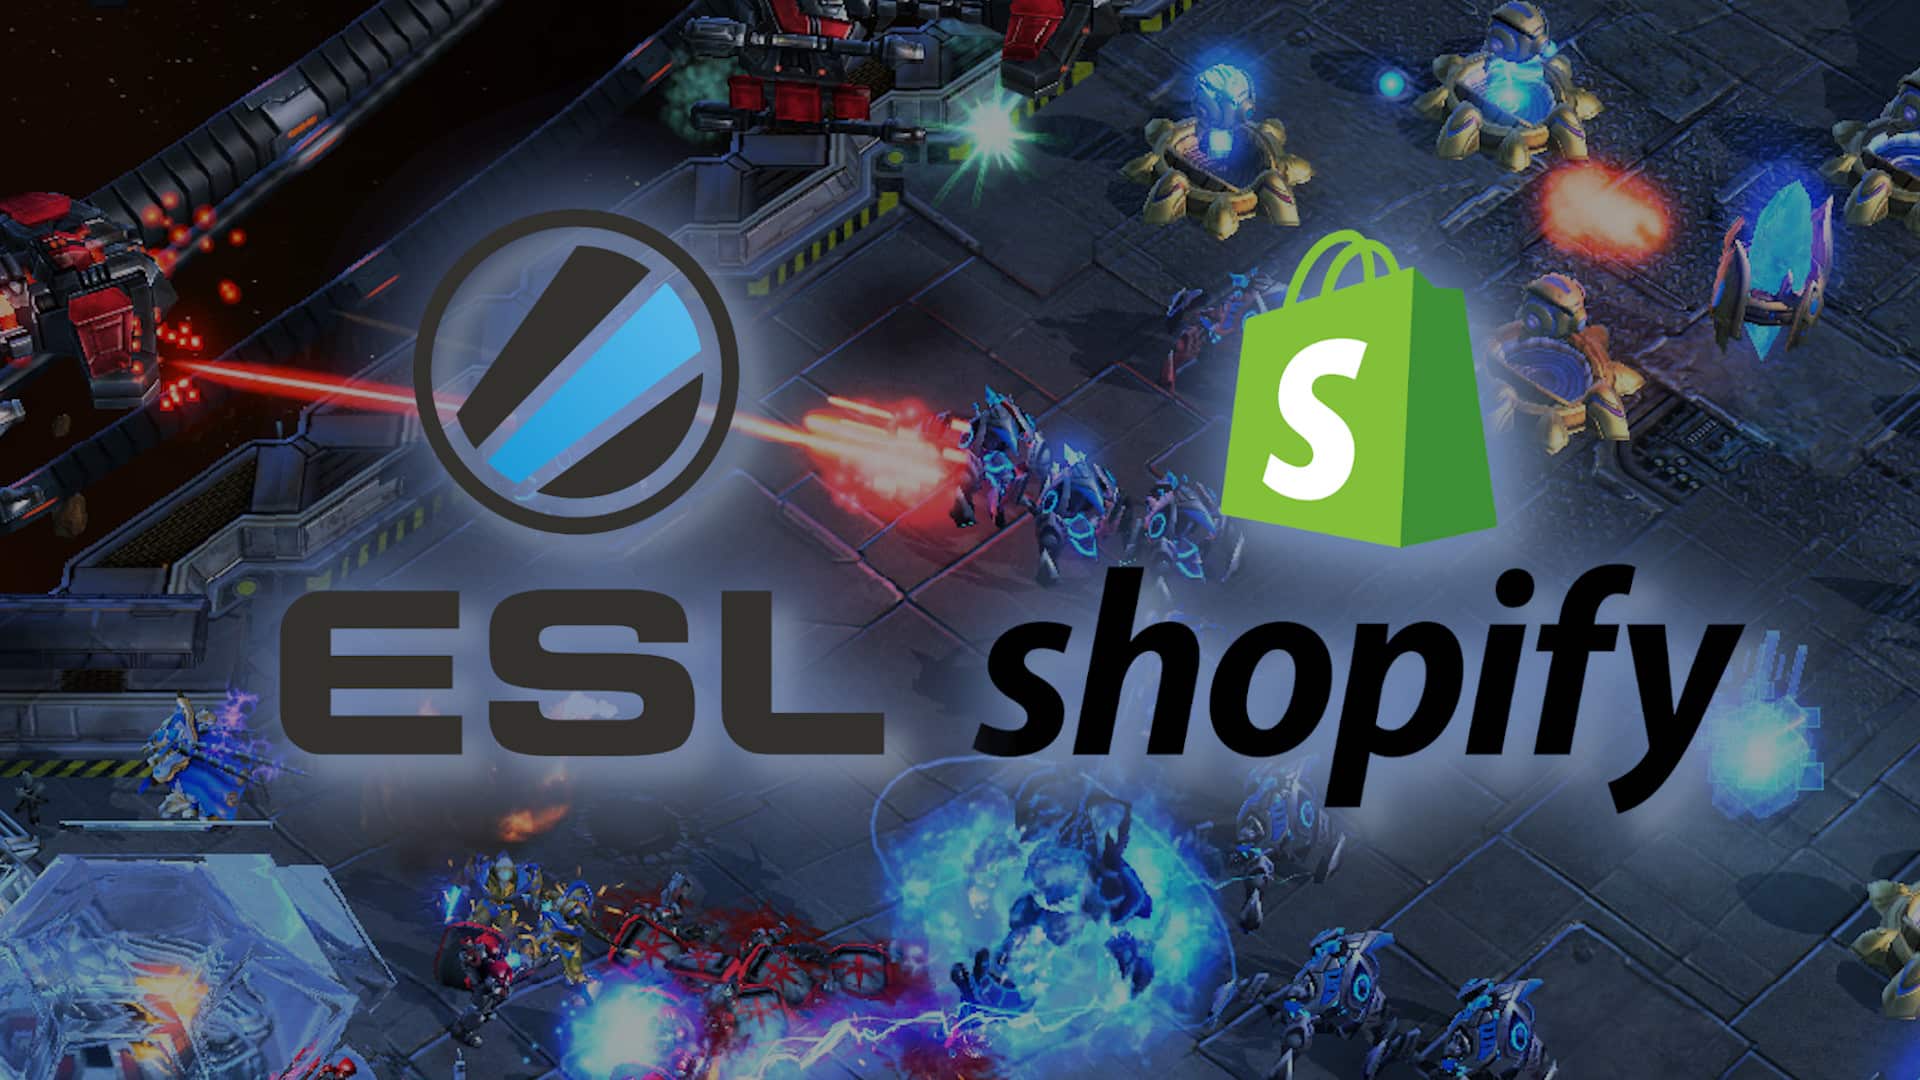 esl pro league shopify starcraft 2